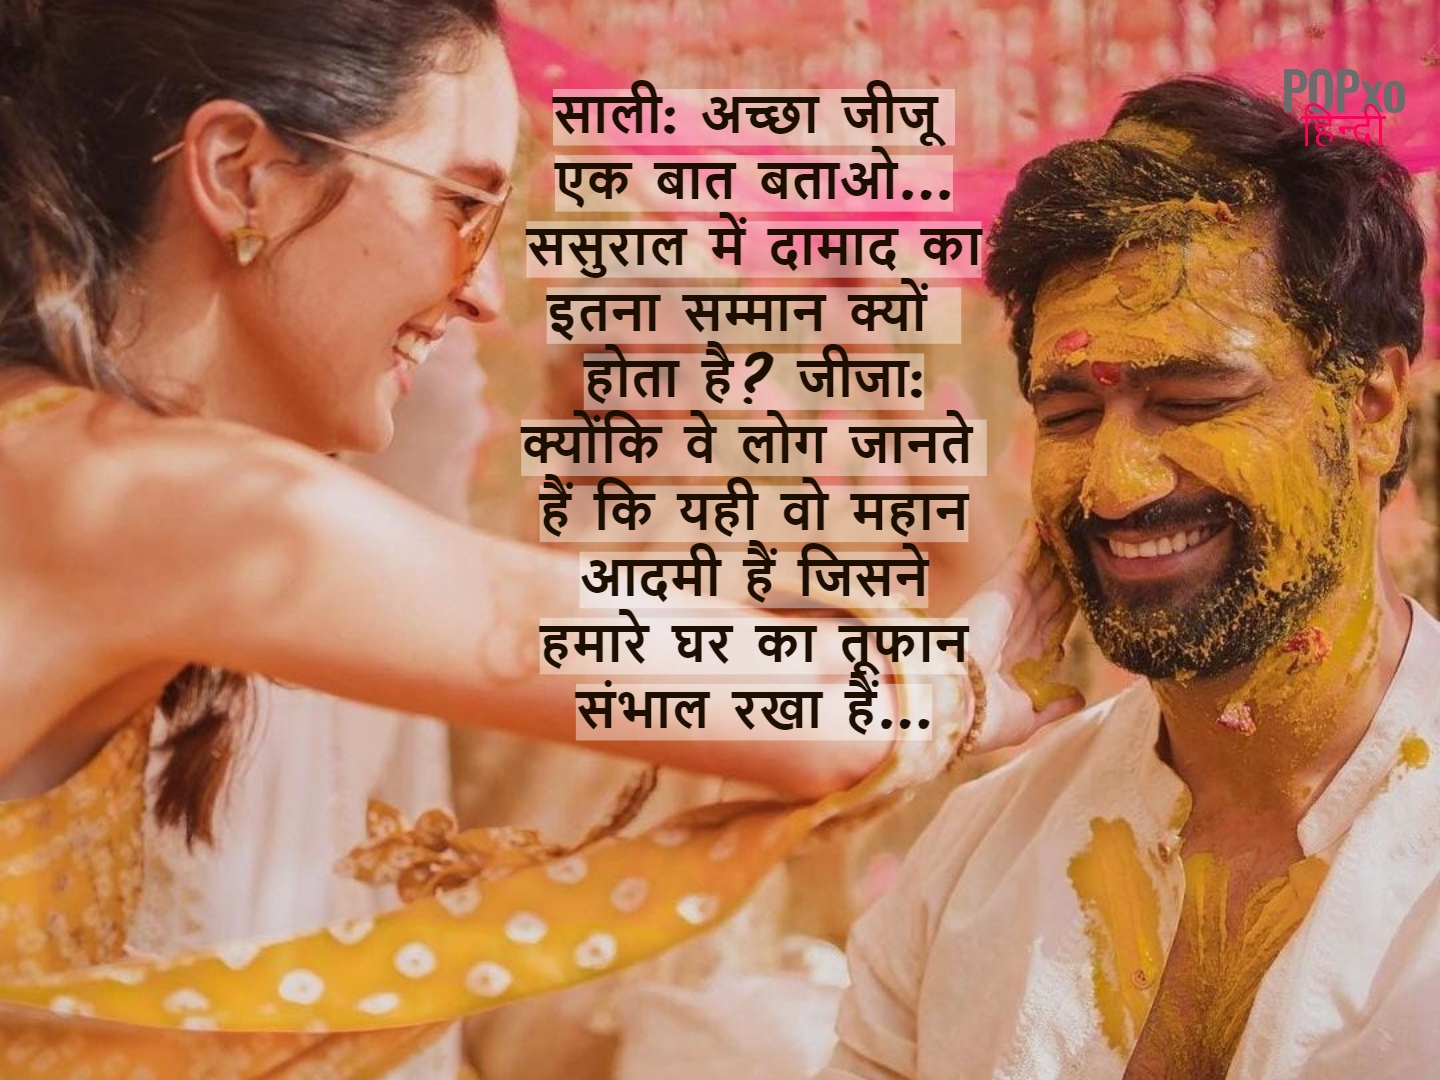 20+ Jija Sali Jokes in Hindi - यहाँ पढ़िए लेटेस्ट जीजा साली जोक्स और शेयर  करें